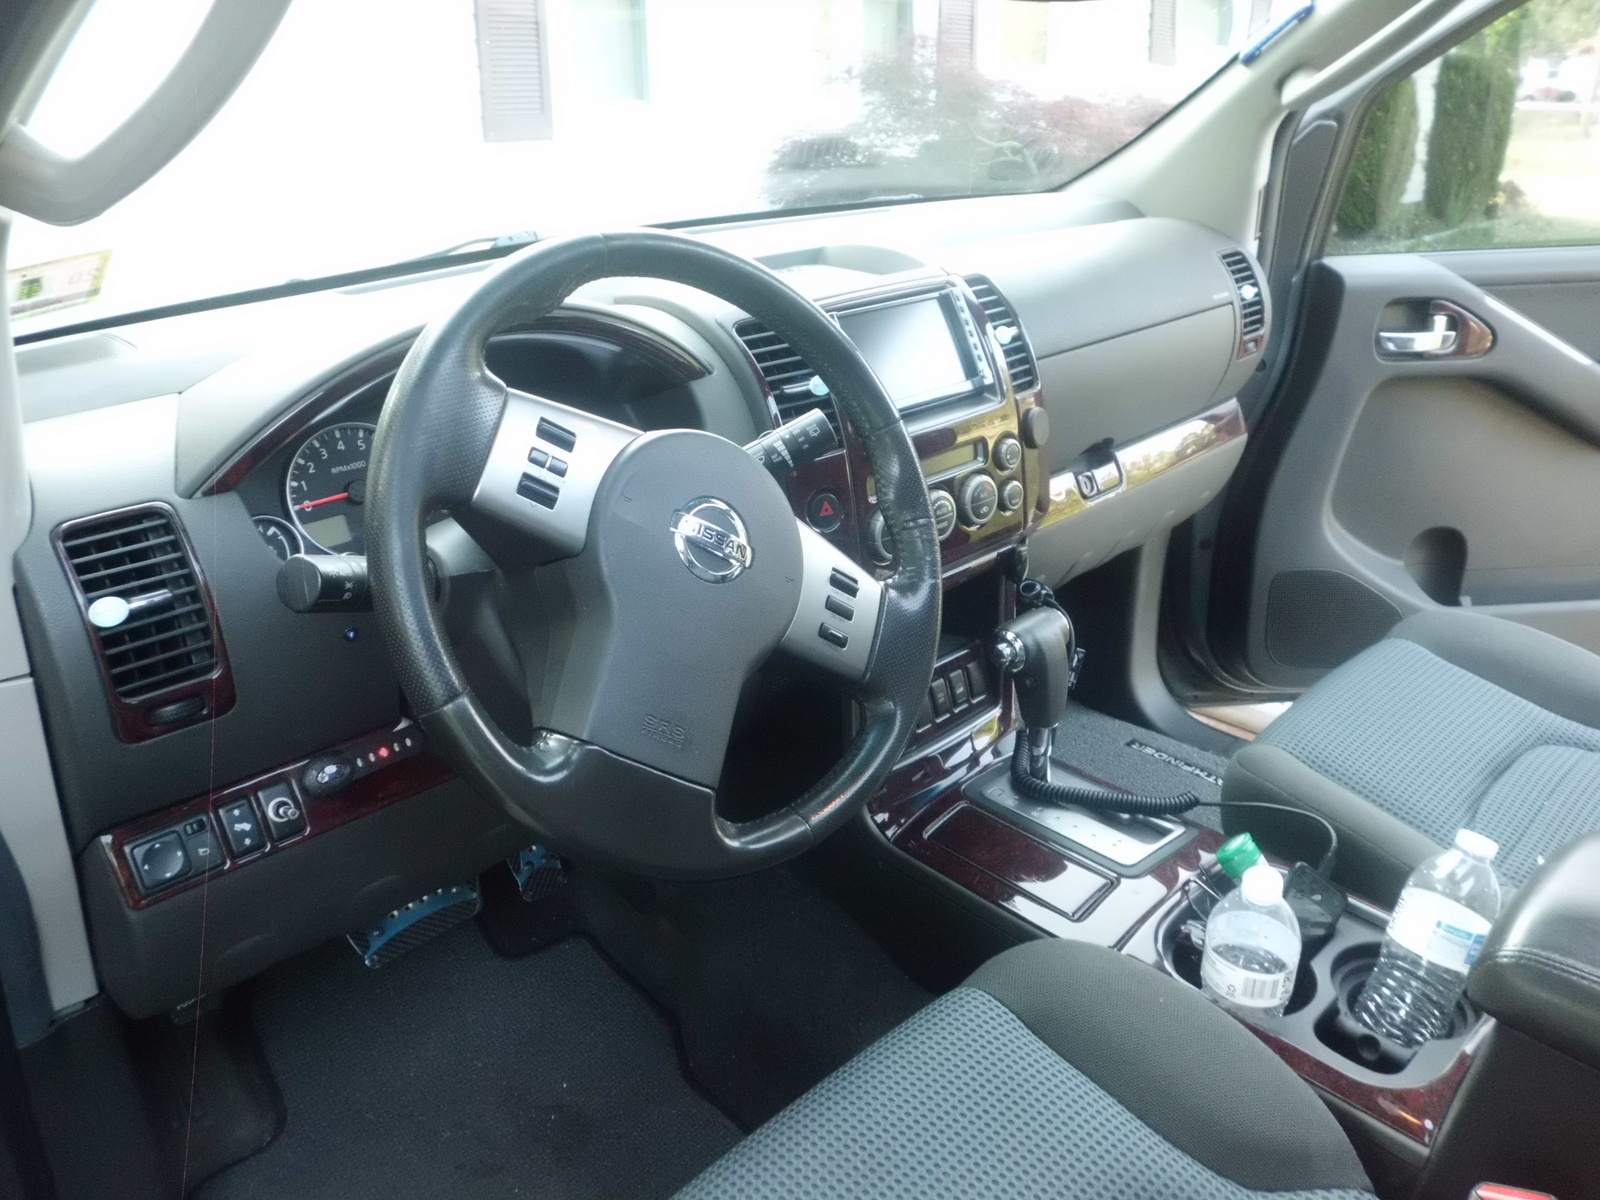 2005 Nissan pathfinder se interior #4